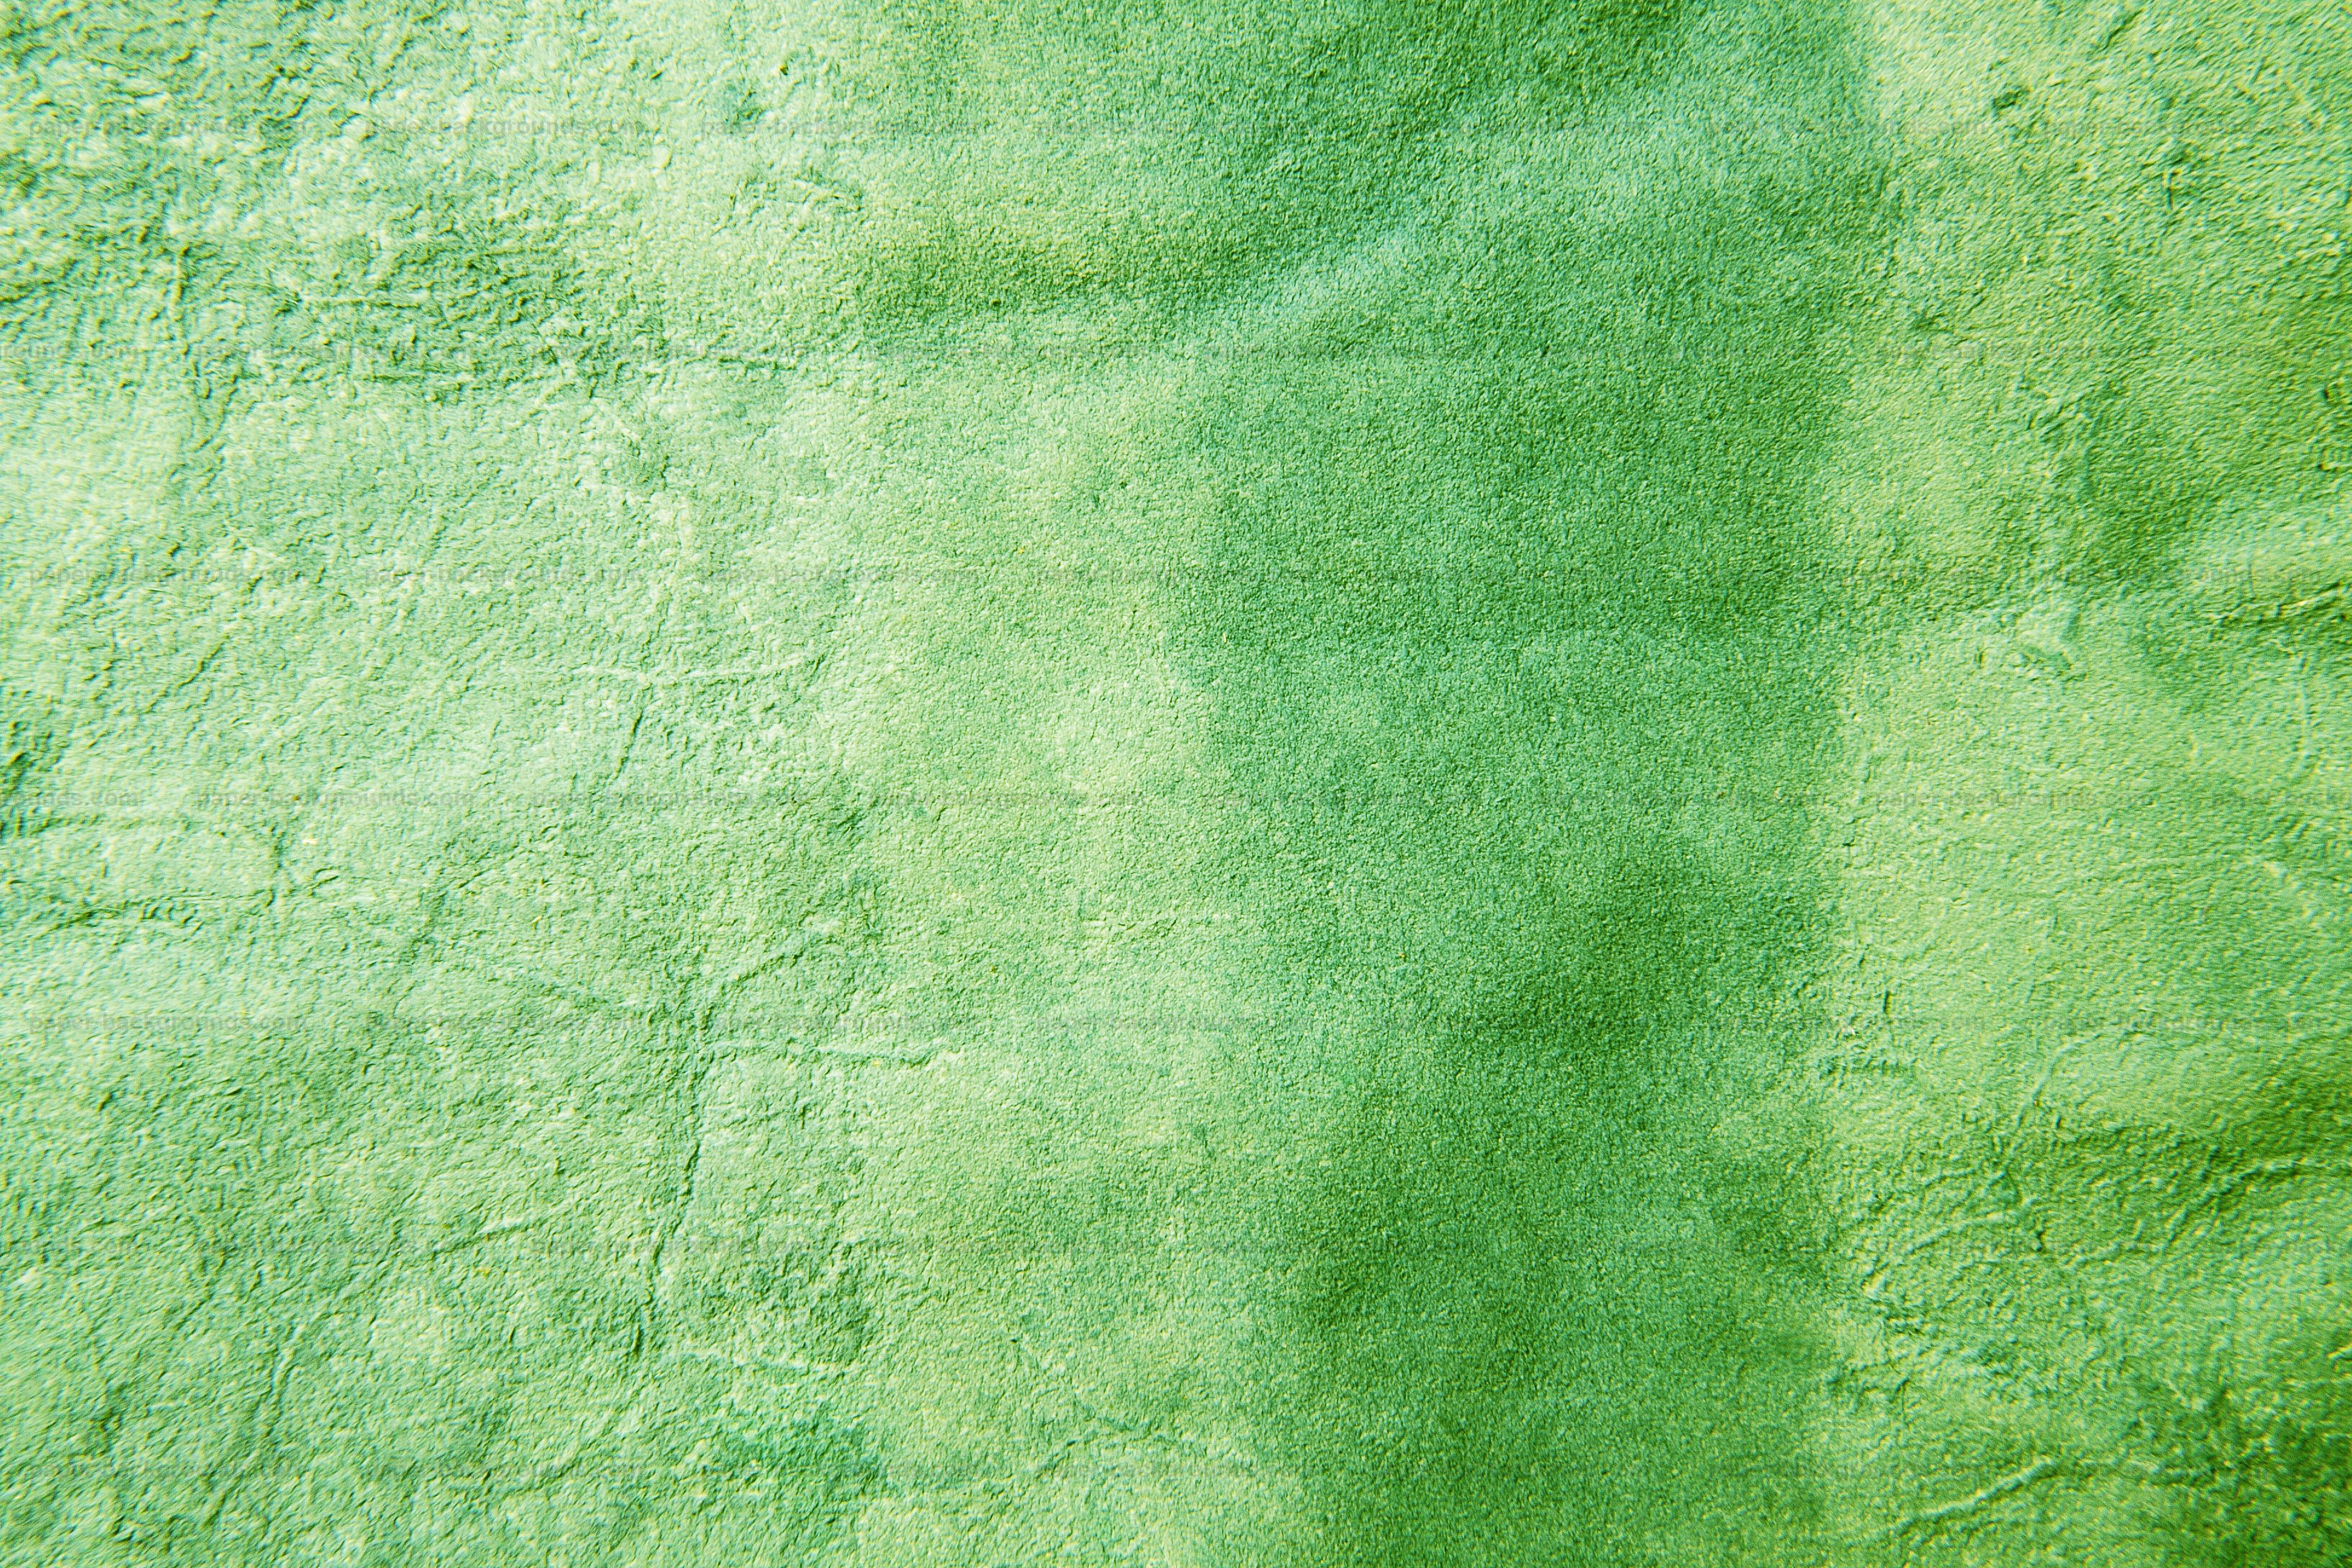 Green Grunge Backgrounds | Textures | FreeCreatives